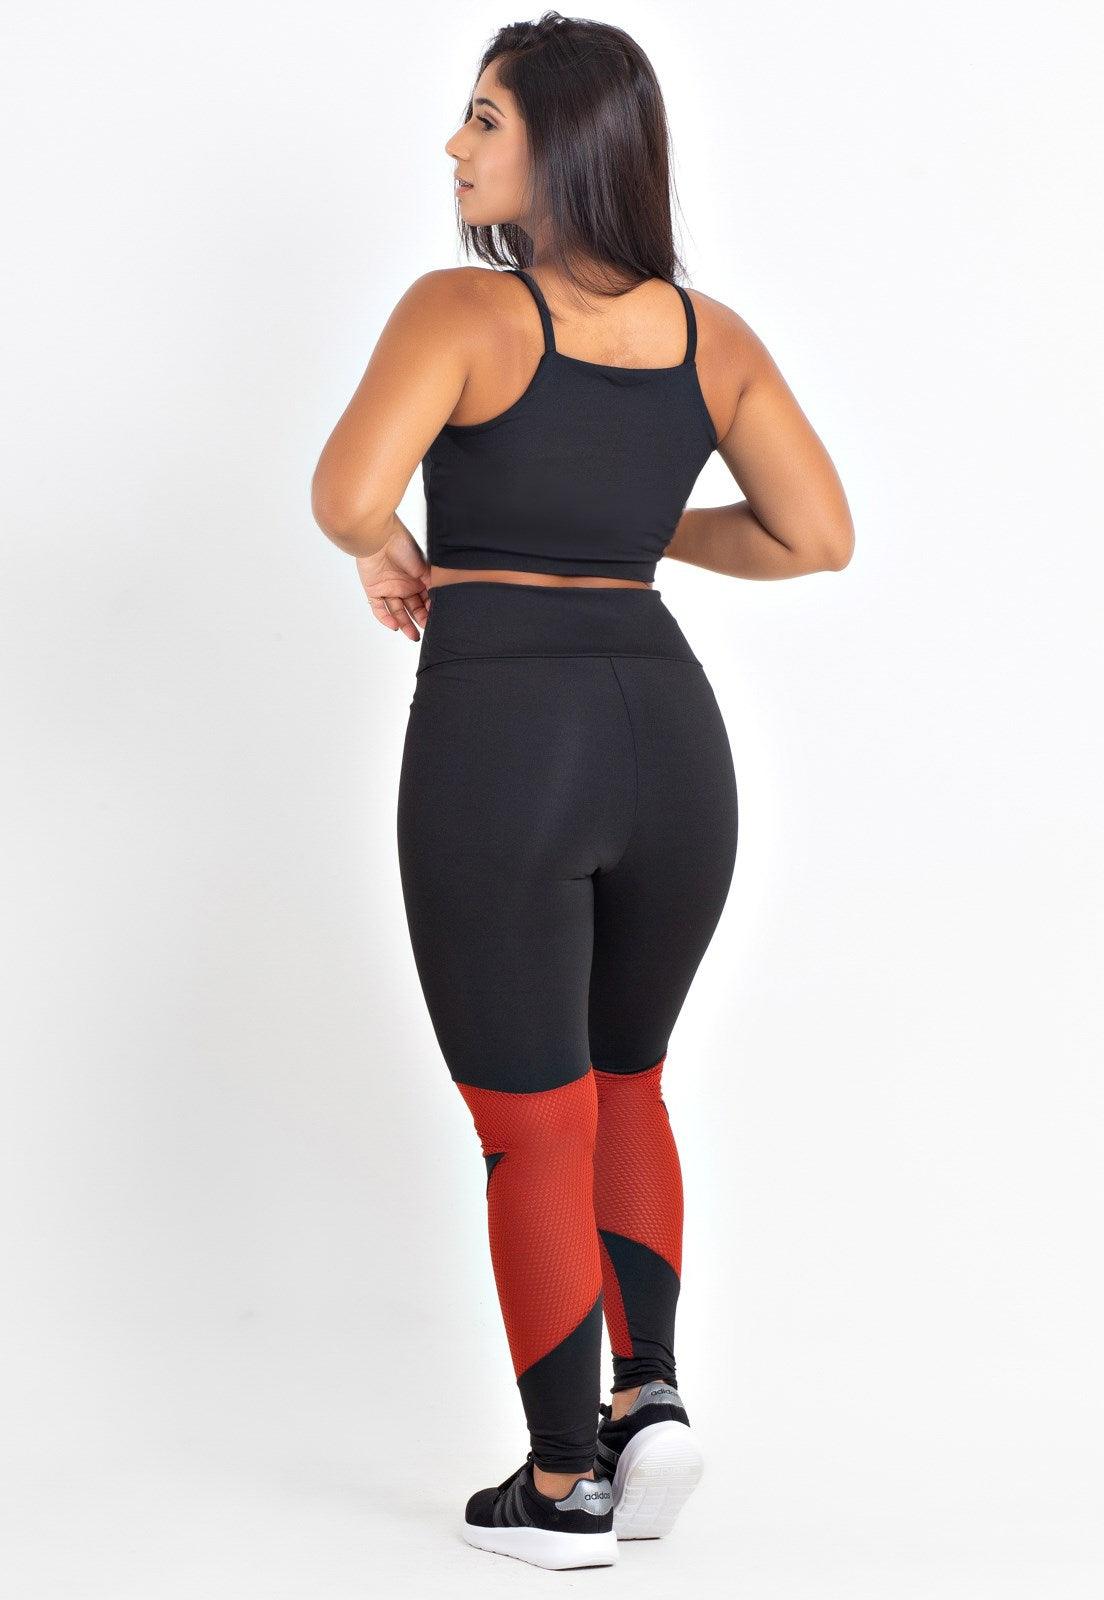 Conjunto Fitness Feminino Calça Legging Preta Estilo Ativo - Compre Agora!